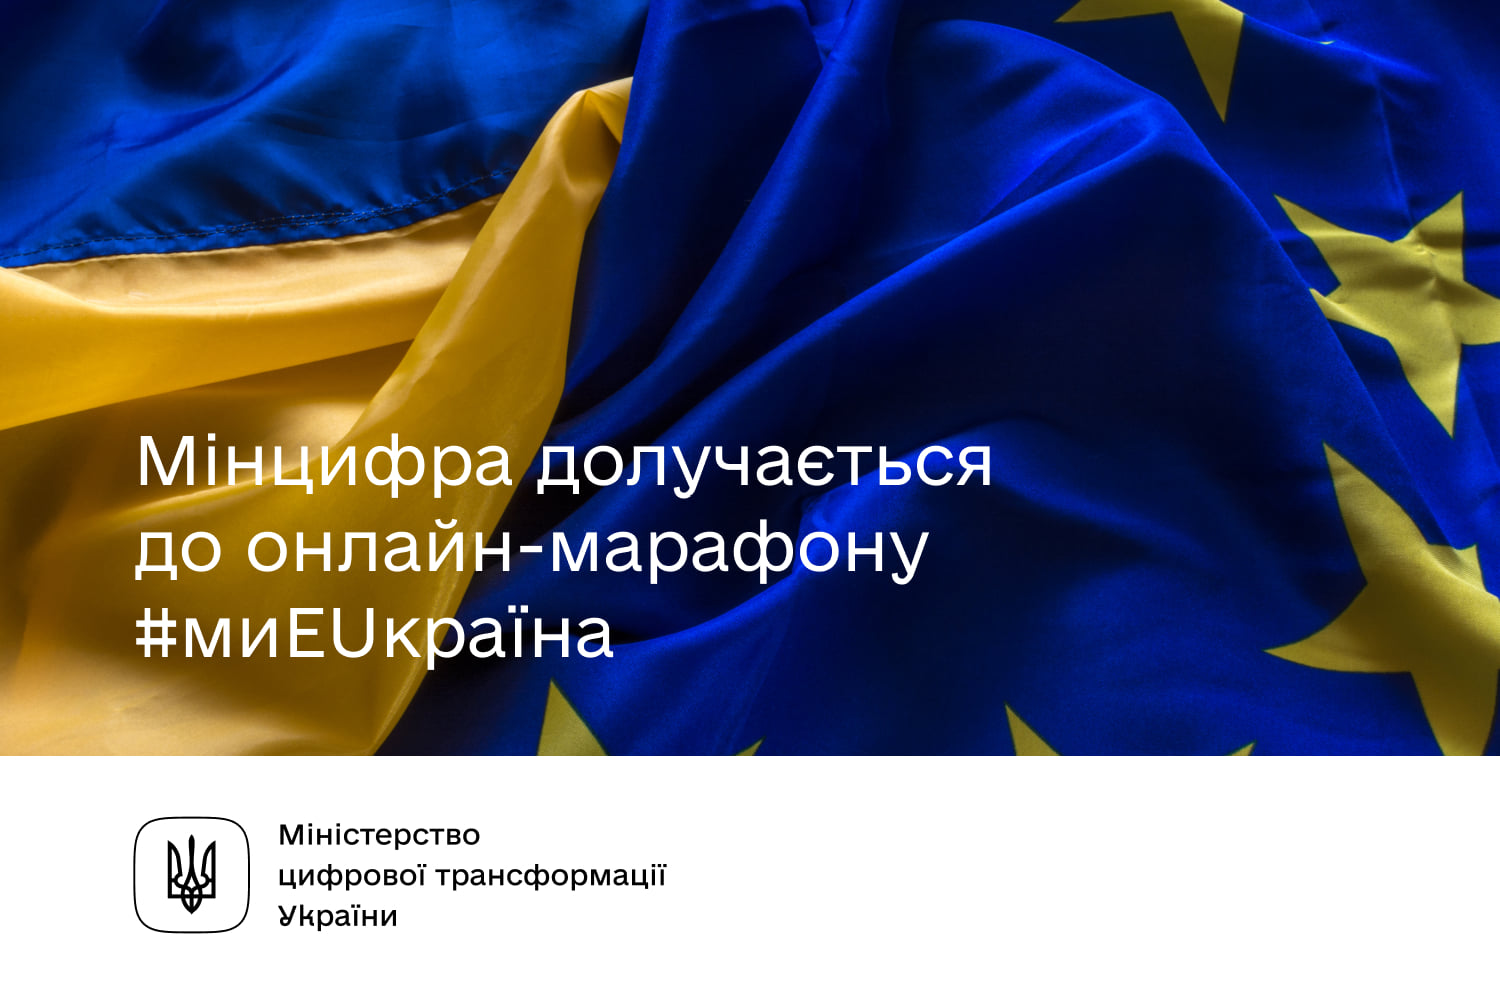 Онлайн-марафон #миEUкраїна до Дня Європи в Україні